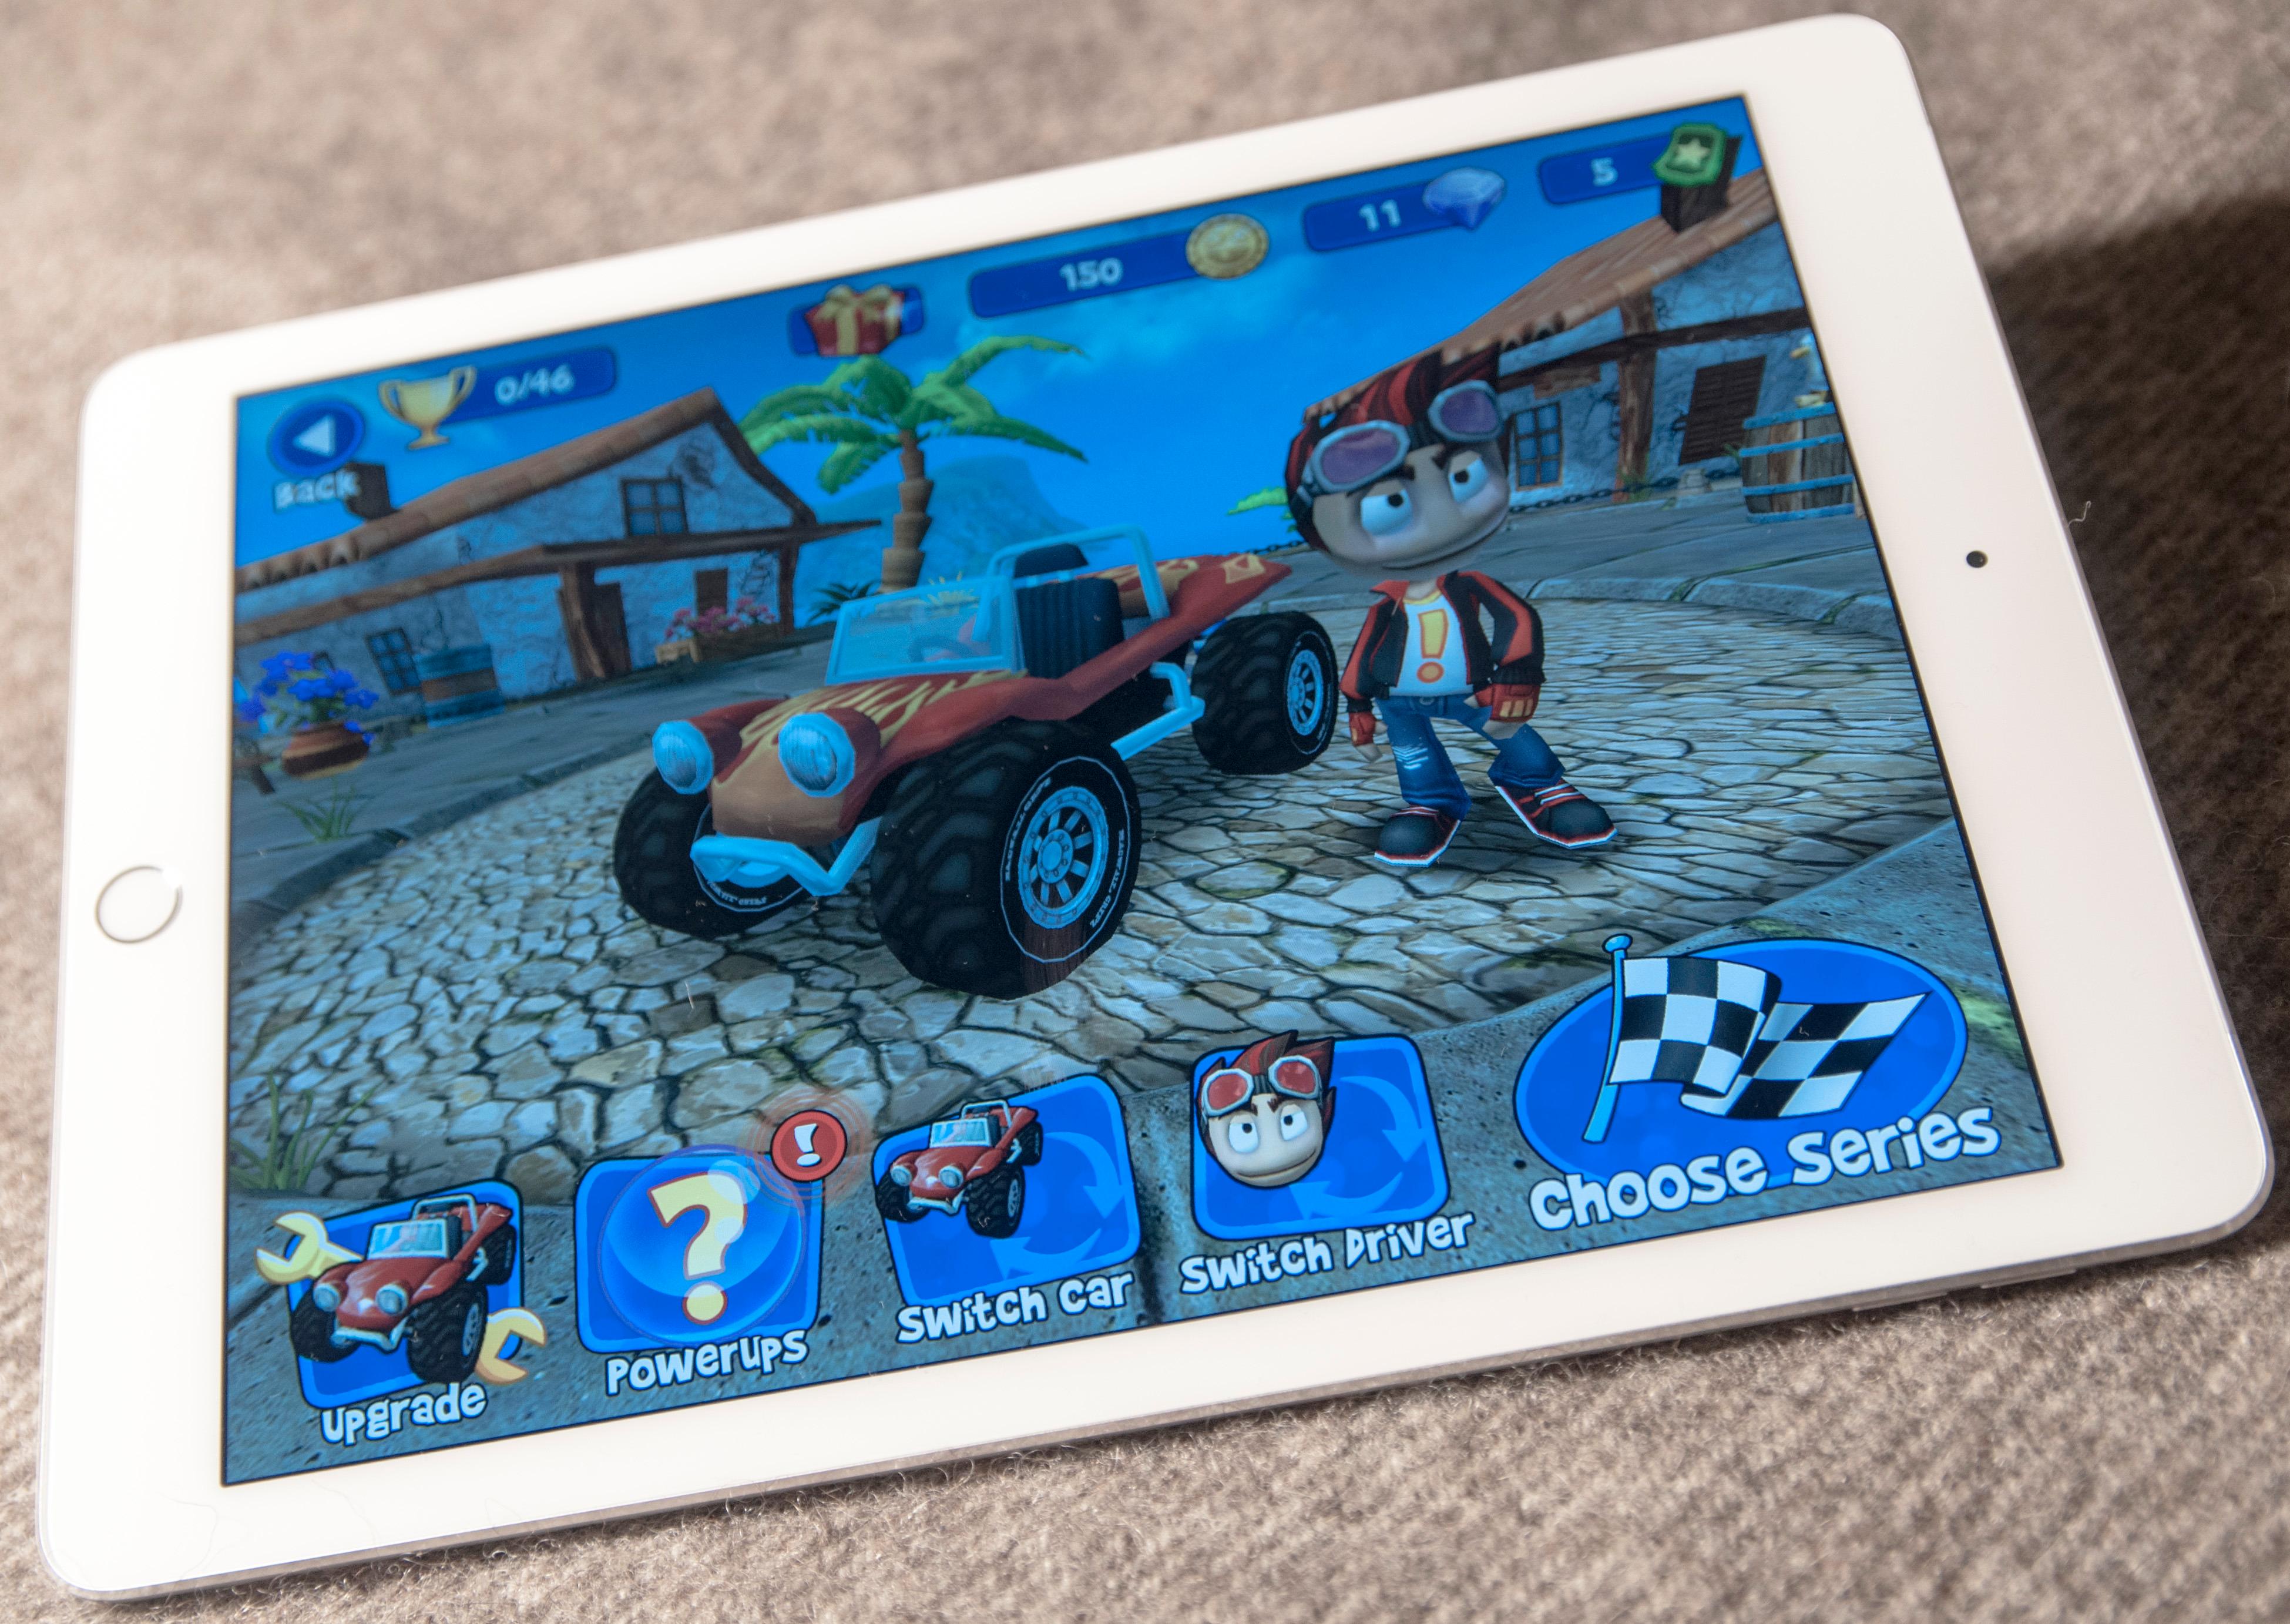 iPad Air 2 er rett og slett en fortreffelig spillmaskin. På sitt beste blir grafikken påfallende naturtro, men også spill med tegneserieaktig grafikk kan dra nytte av hestekreftene under skjermen.Foto: Finn Jarle Kvalheim, Tek.no